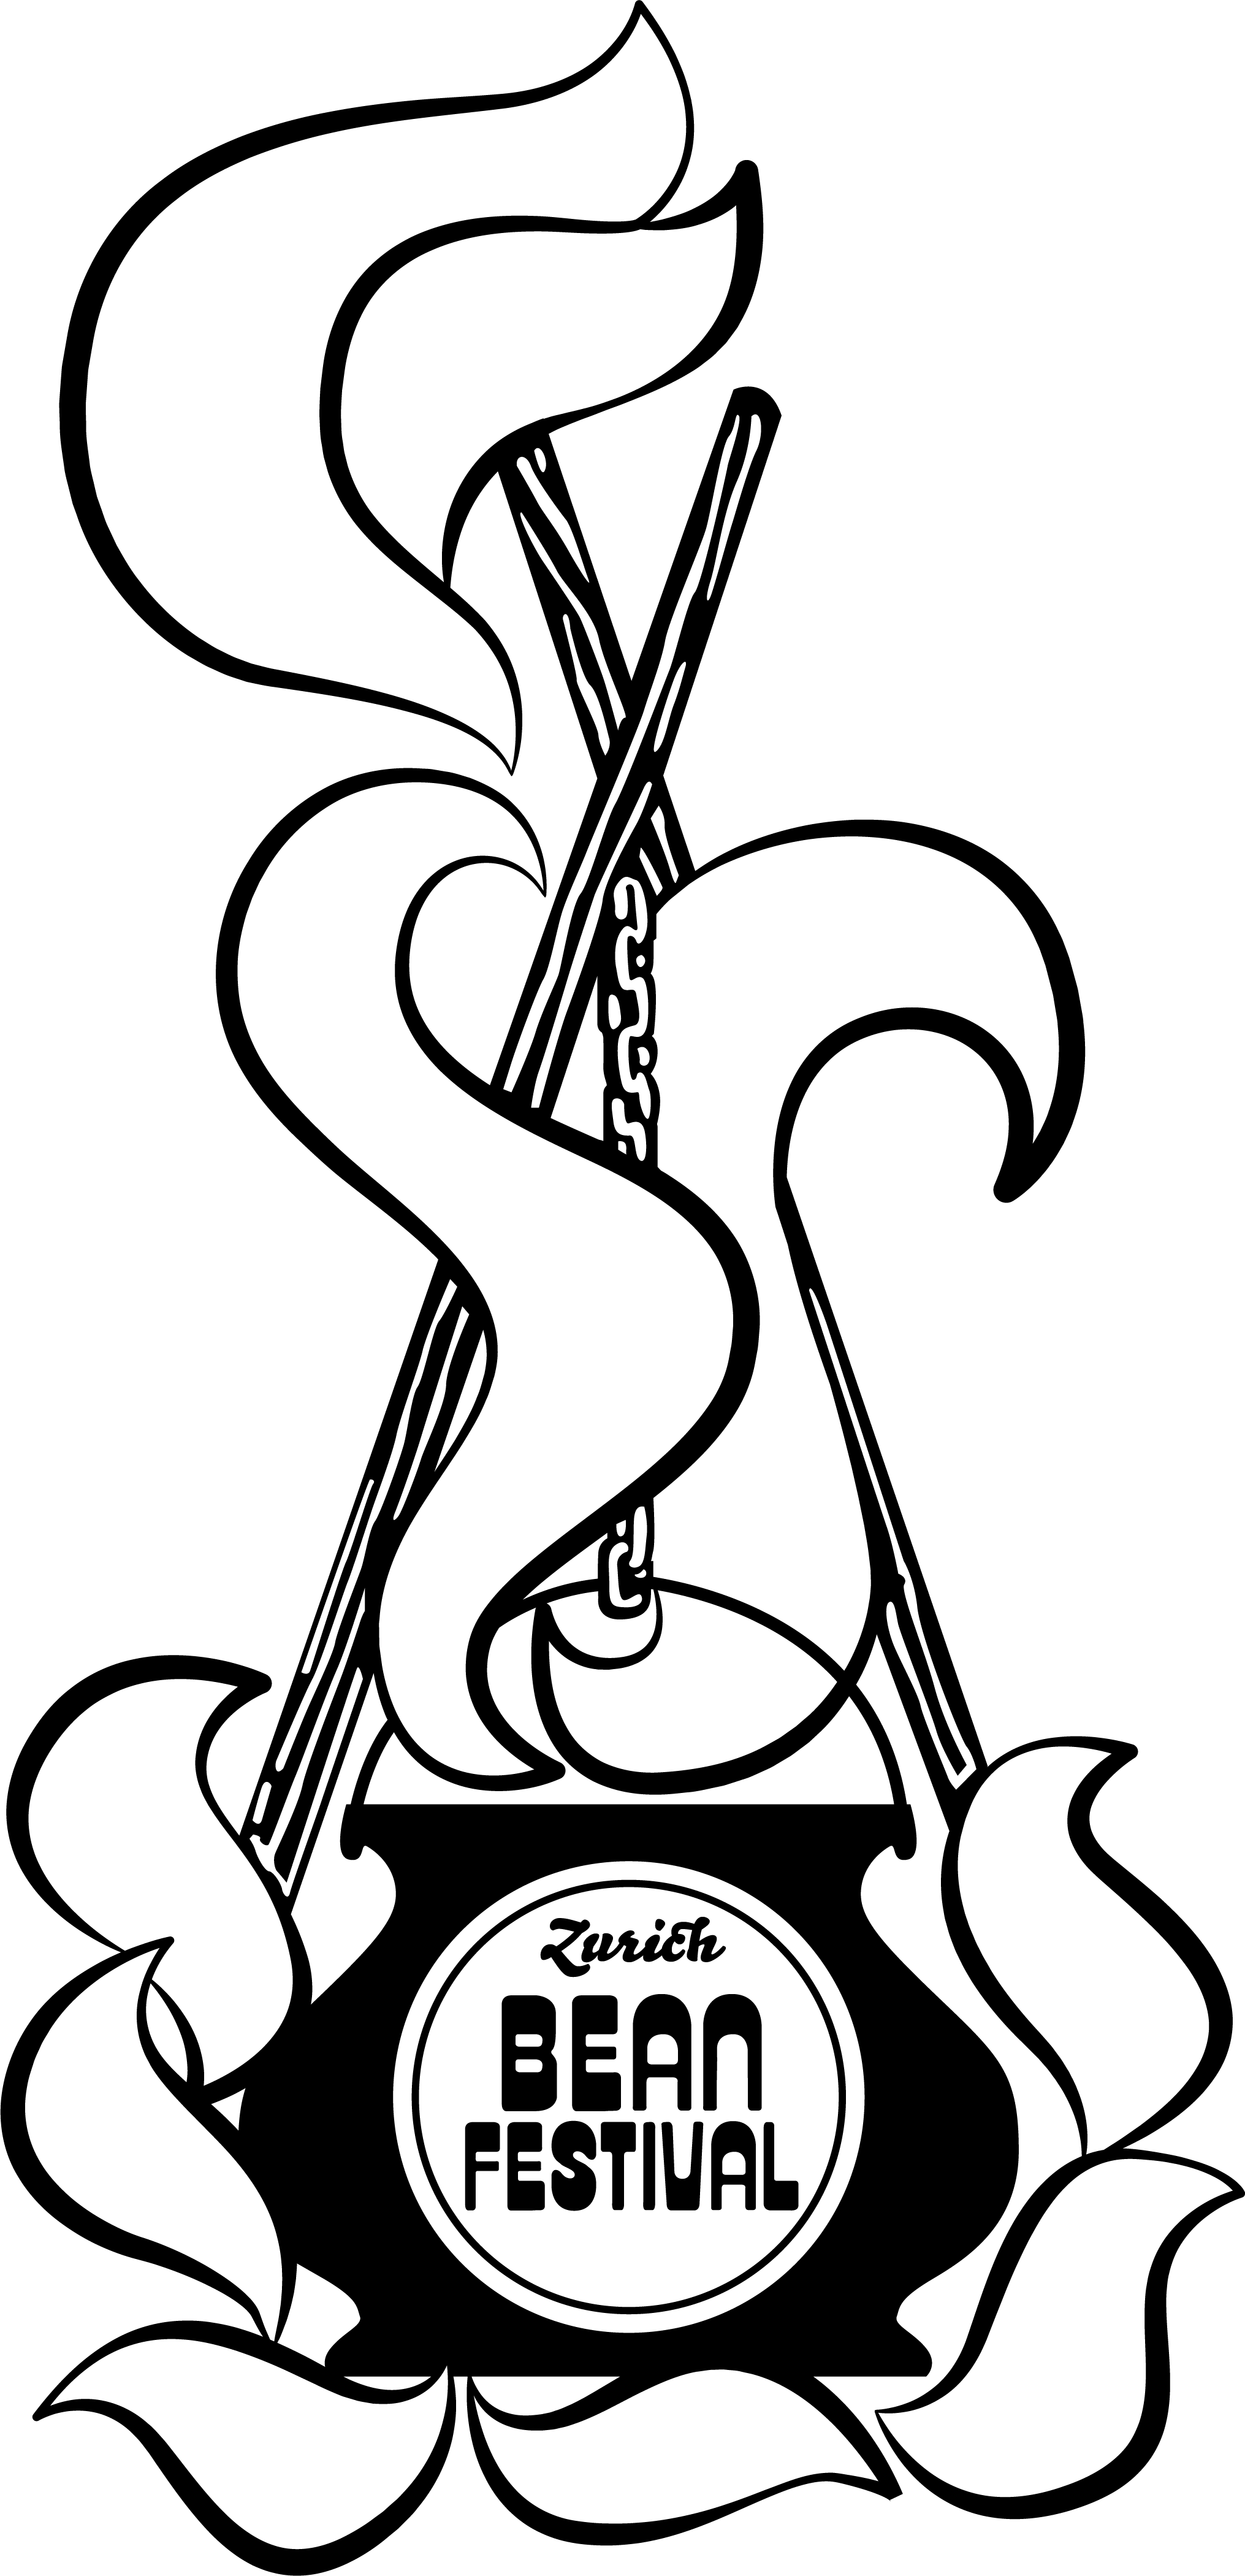 zurich-bean-fest-logo